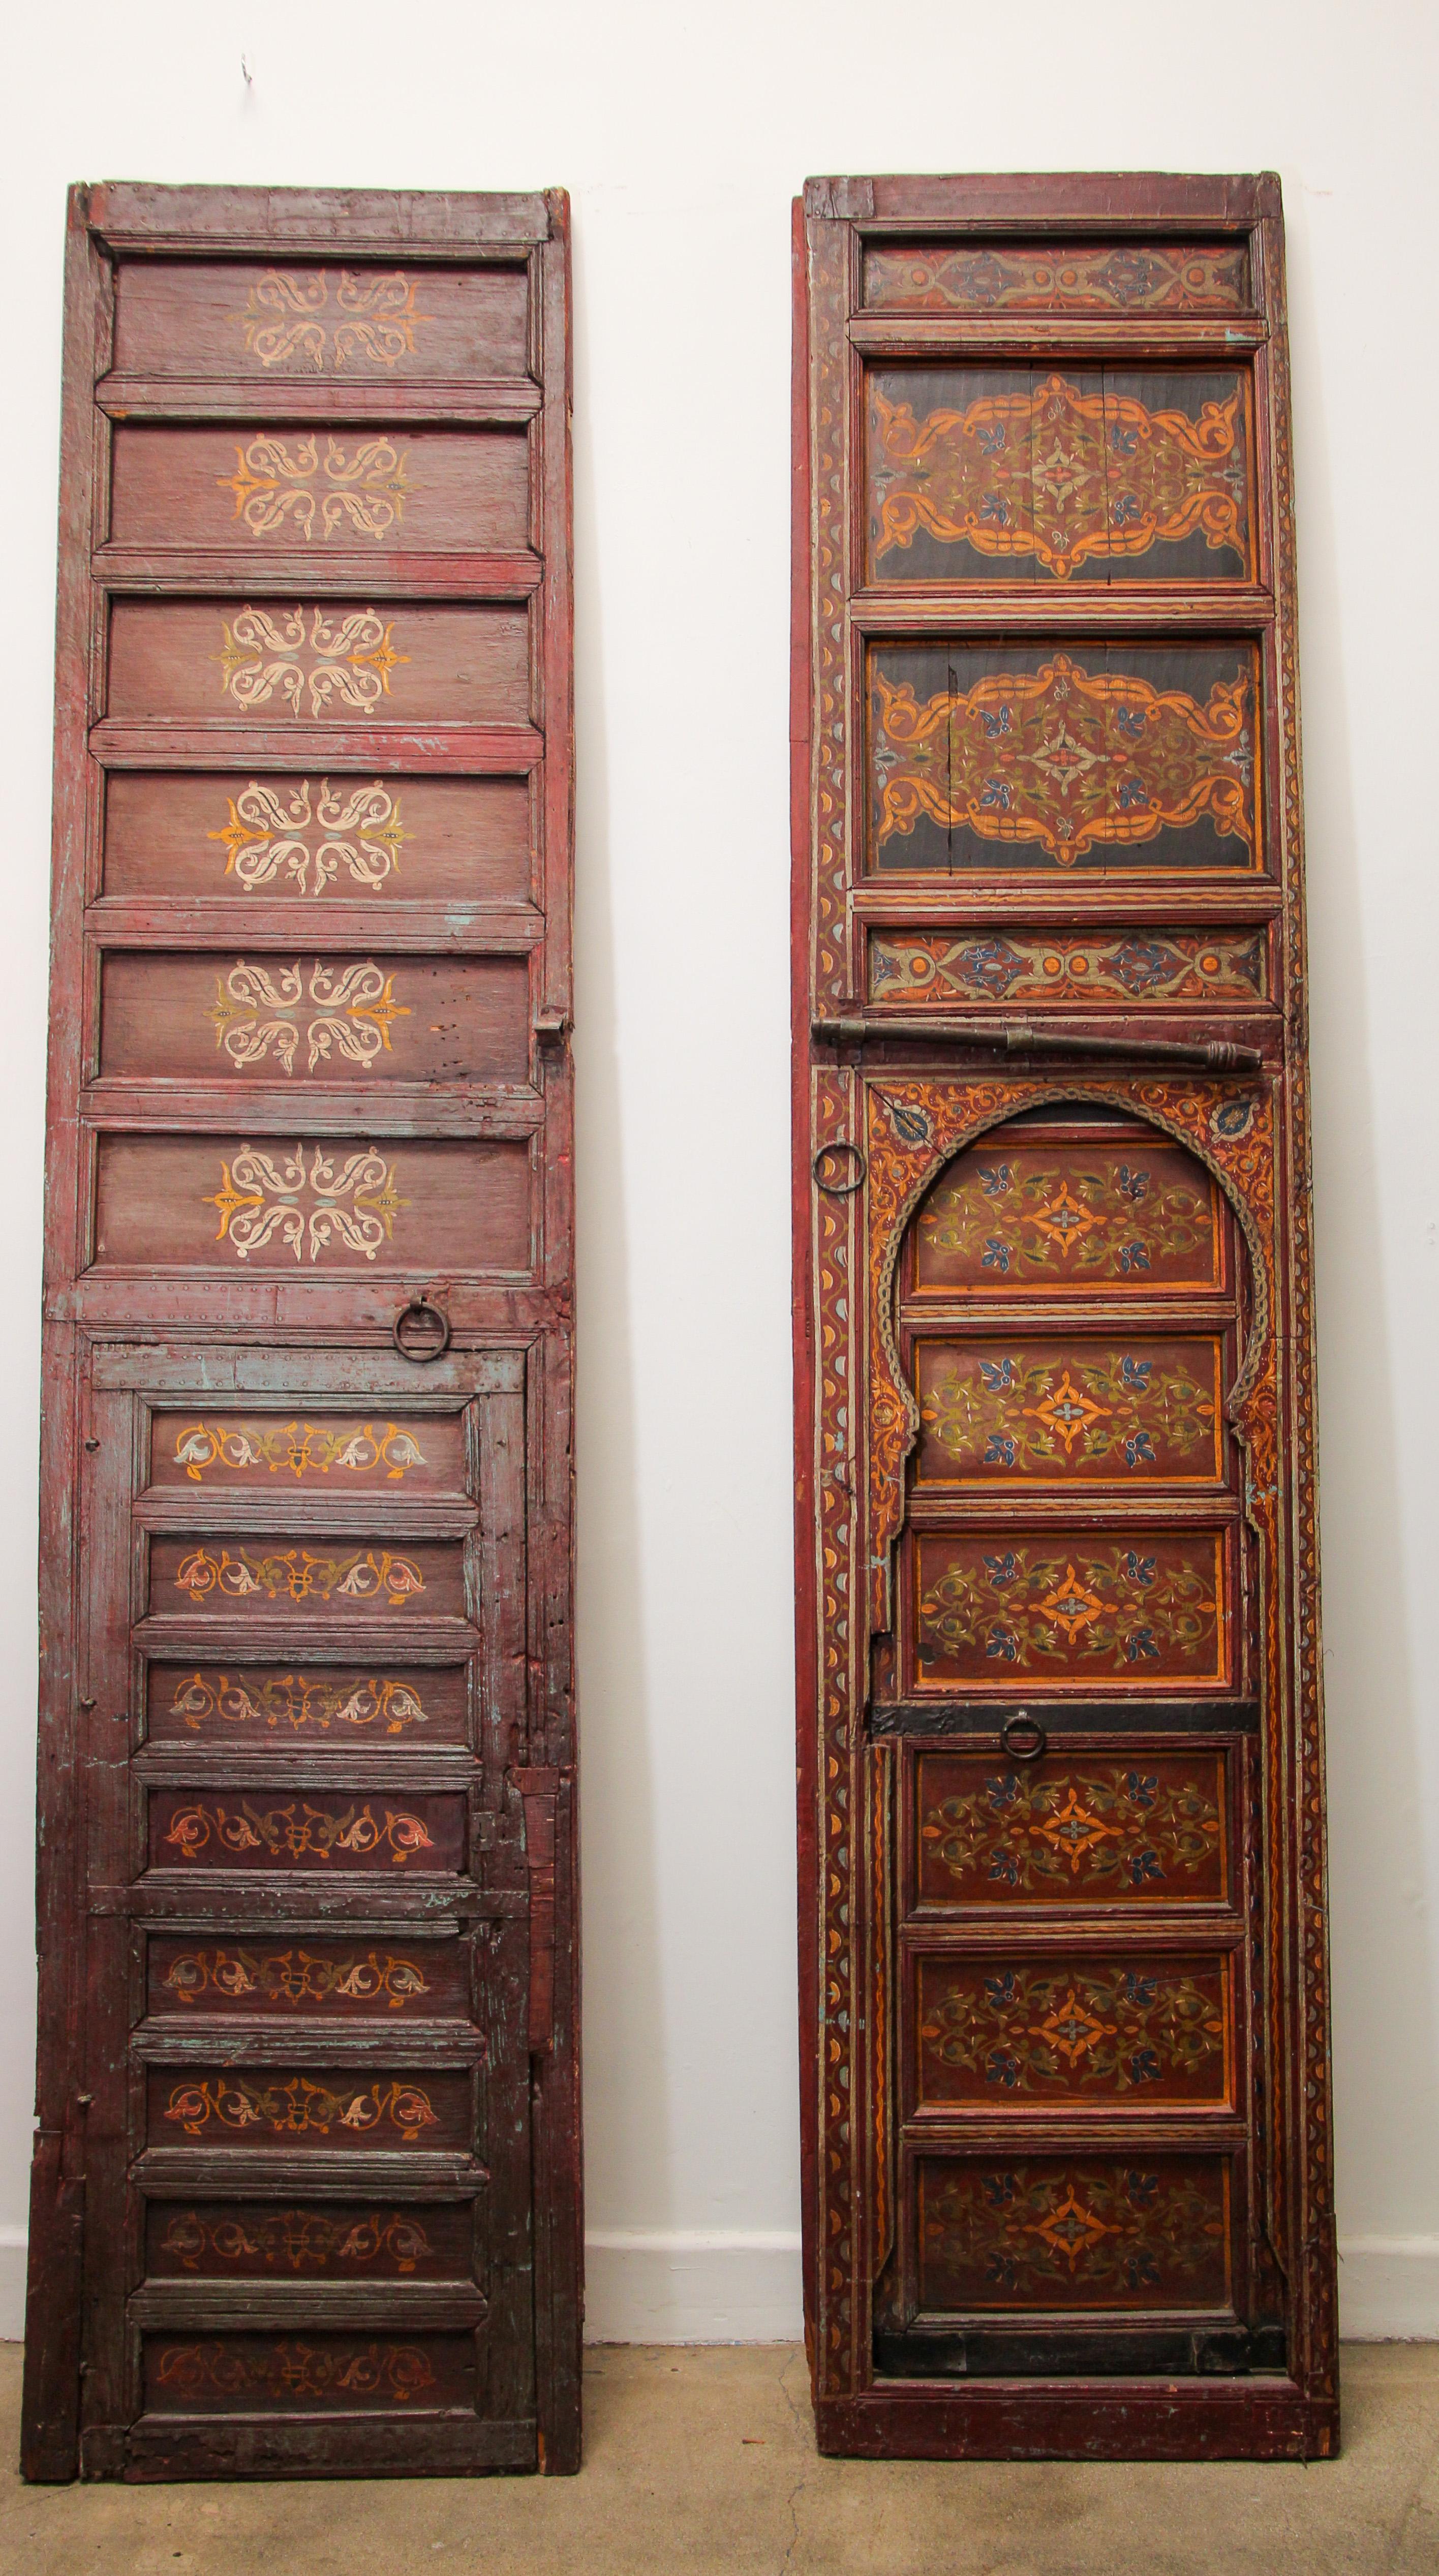 Immenses portes antiques marocaines provenant d'un ryad à Fès, étonnantes œuvres d'art peintes à la main.
Motifs géométriques mauresques multicolores en rouge foncé, vert, jaune.
Les portes et meubles marocains sont surtout connus pour